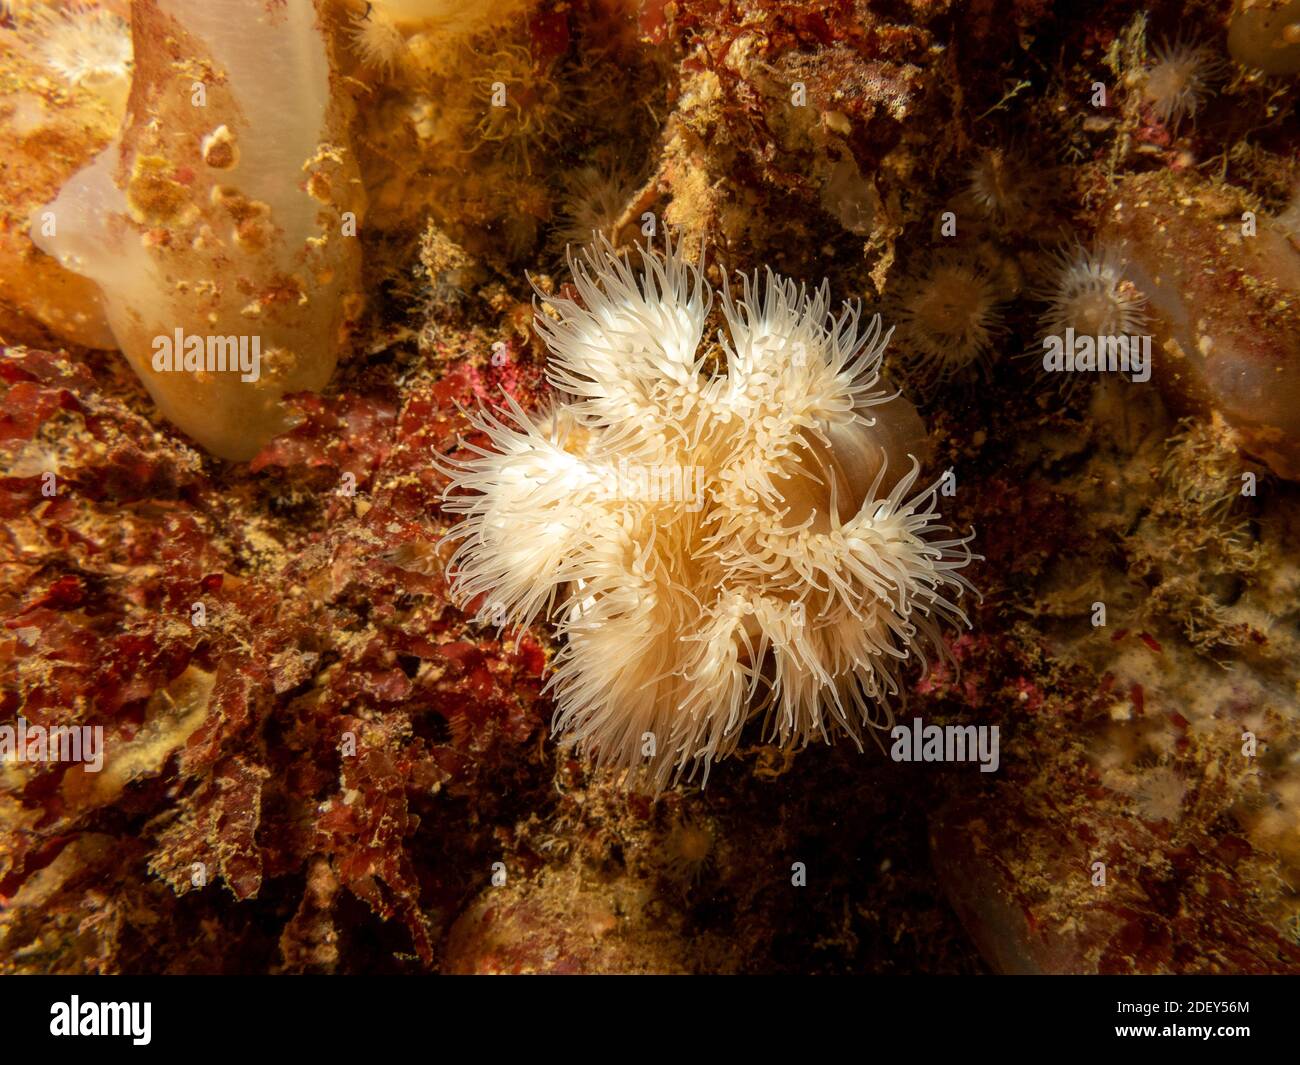 L'anémone de mer, Protanthea simplex se trouve en eaux profondes au large des côtes du nord-ouest de l'Europe. Photo des îles Weather, ouest de la Suède Banque D'Images